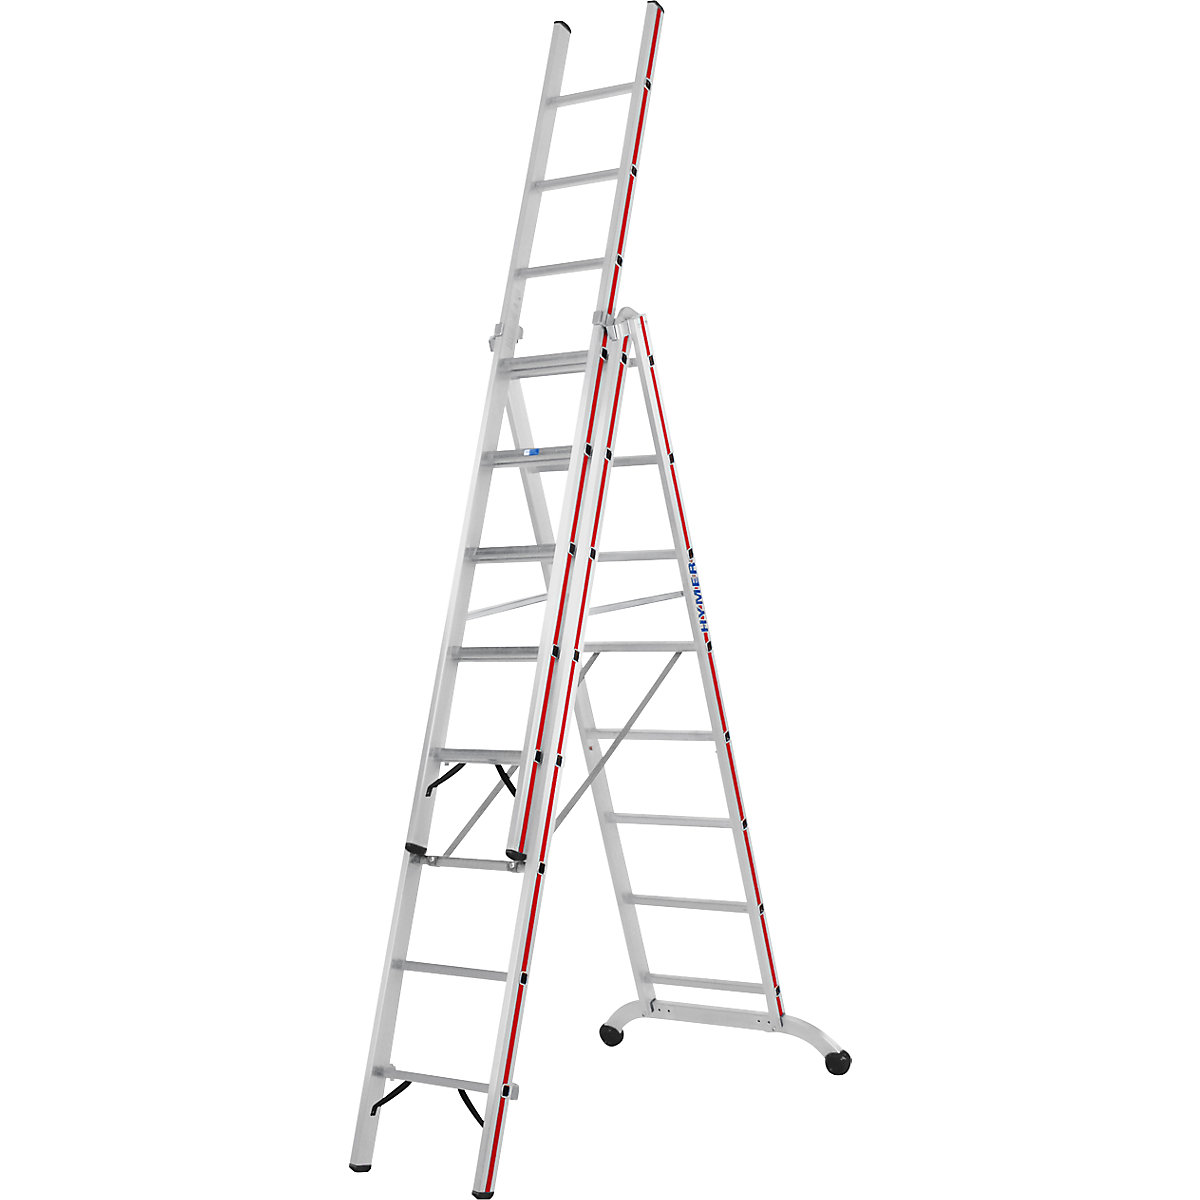 Escalera multiusos de aluminio – HYMER, modelo industrial, 3 x 8 peldaños, altura máx. de trabajo 6,35 m-10